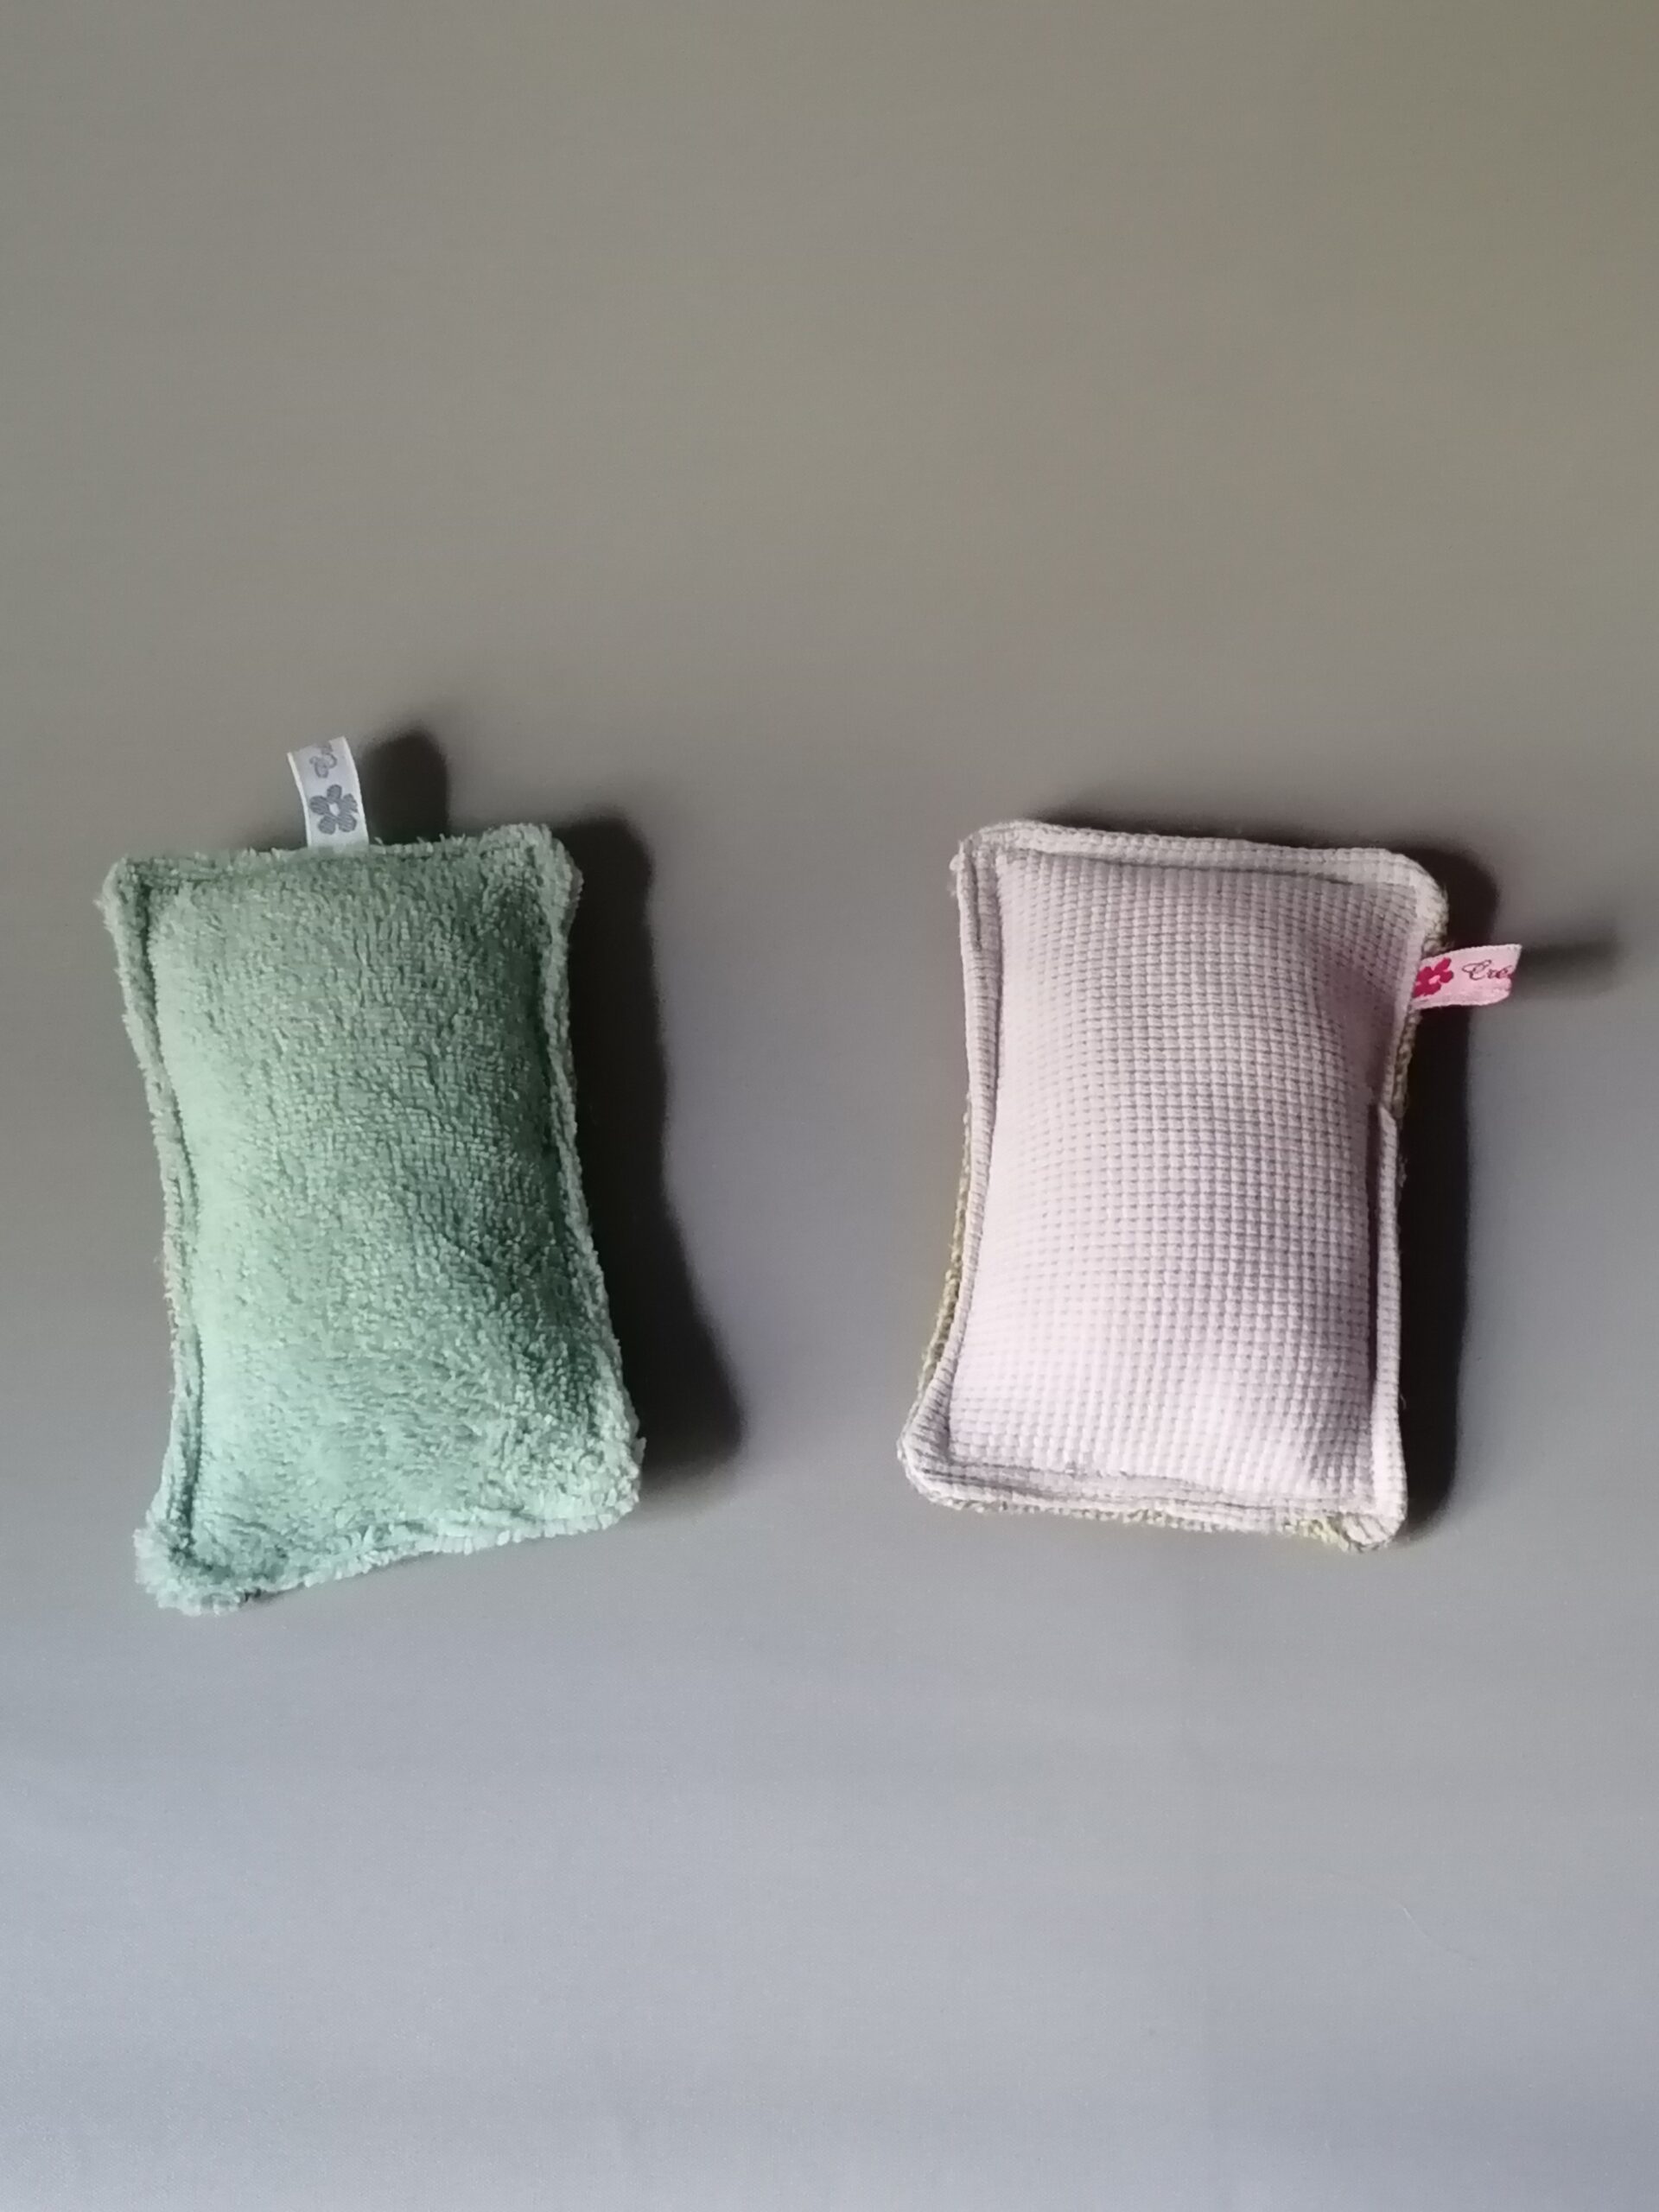 Éponges lavables coton - L'Atelier du Caillou - Couture zéro déchet